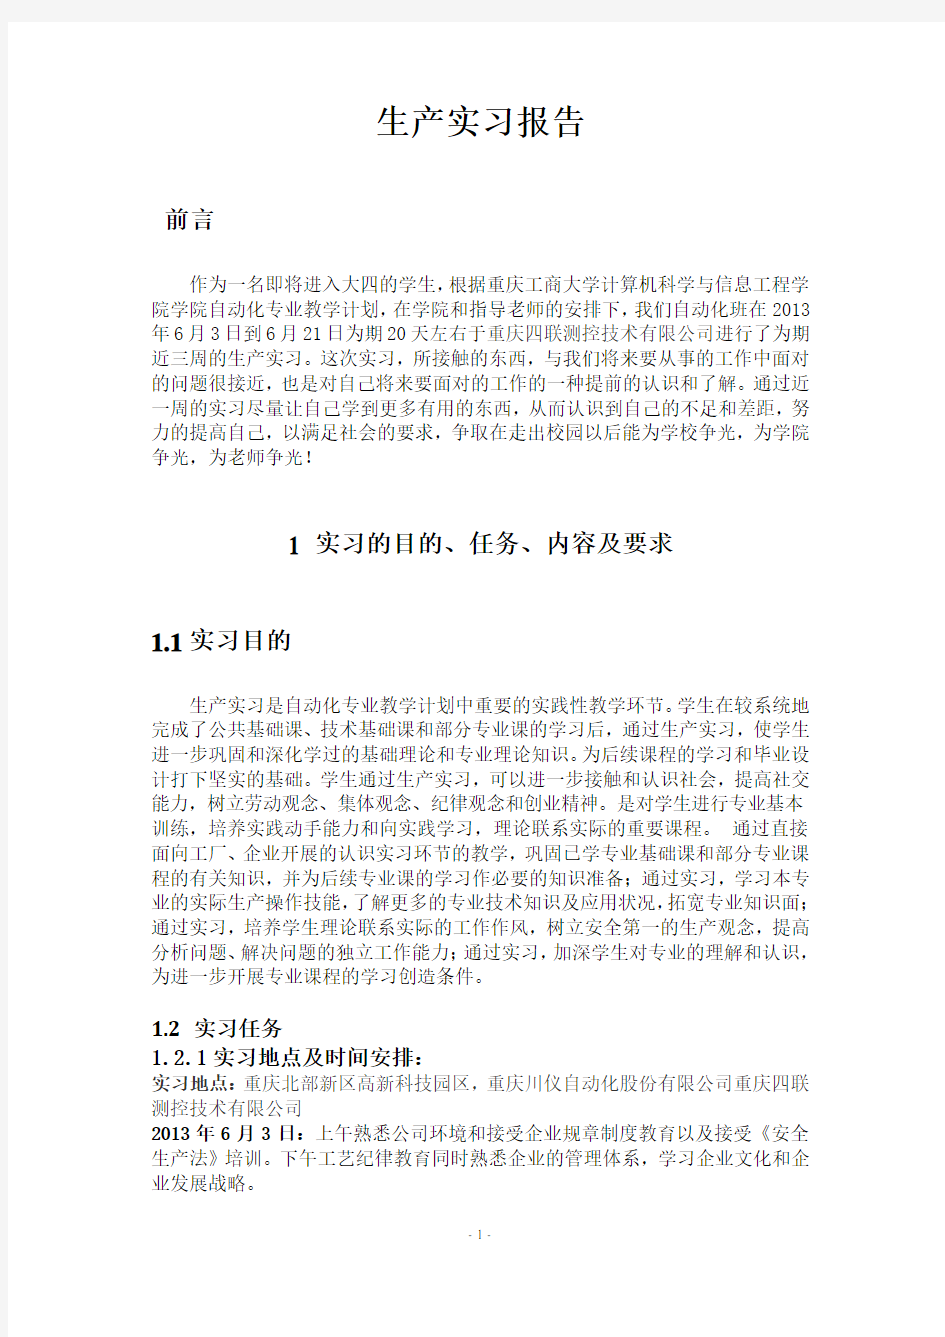 重庆川仪自动化股份有限公司实习报告(提交版